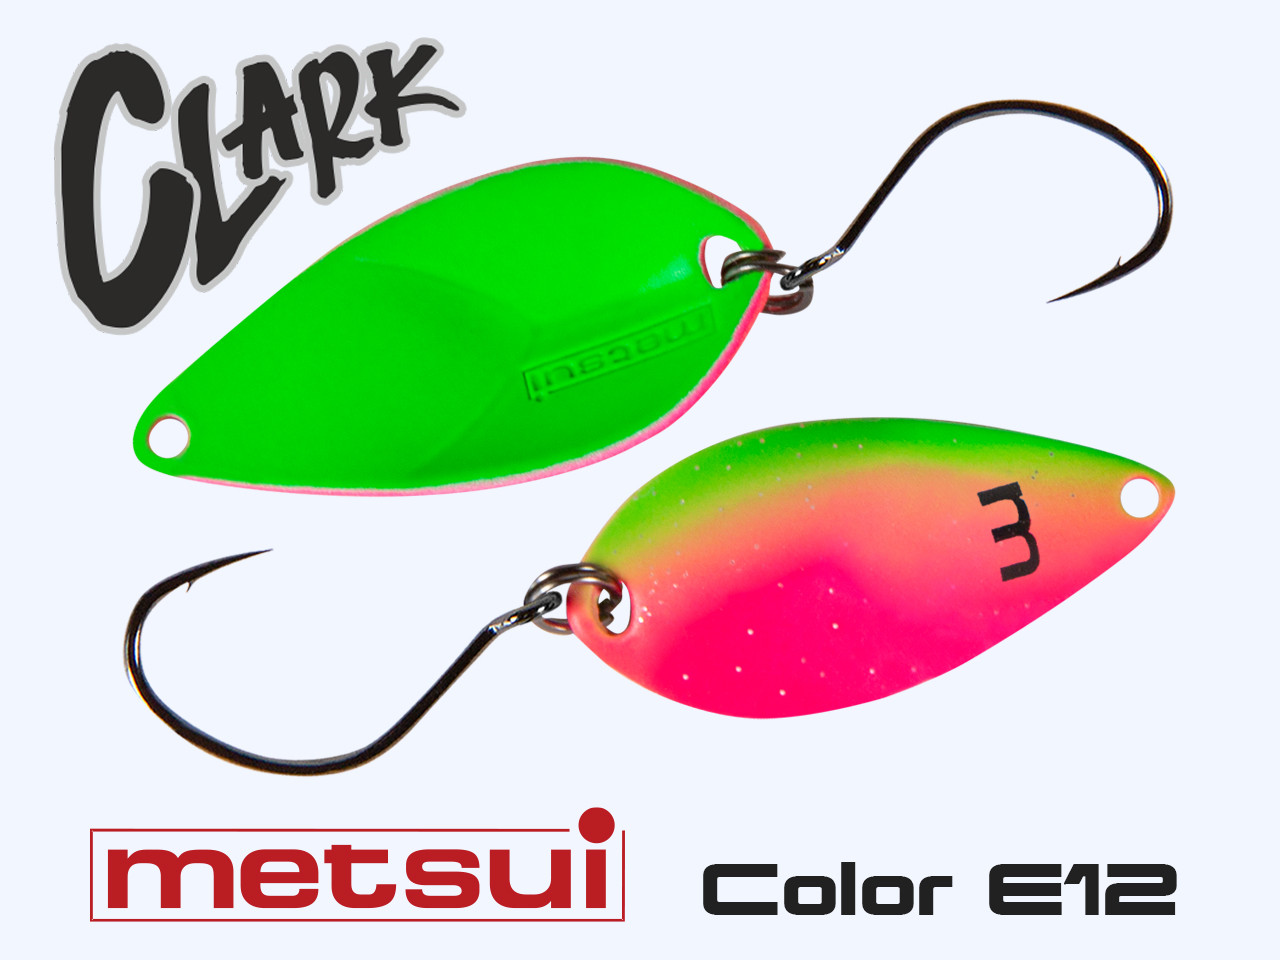 Колеблющаяся блесна METSUI CLARK 3.3 g, цвет E12